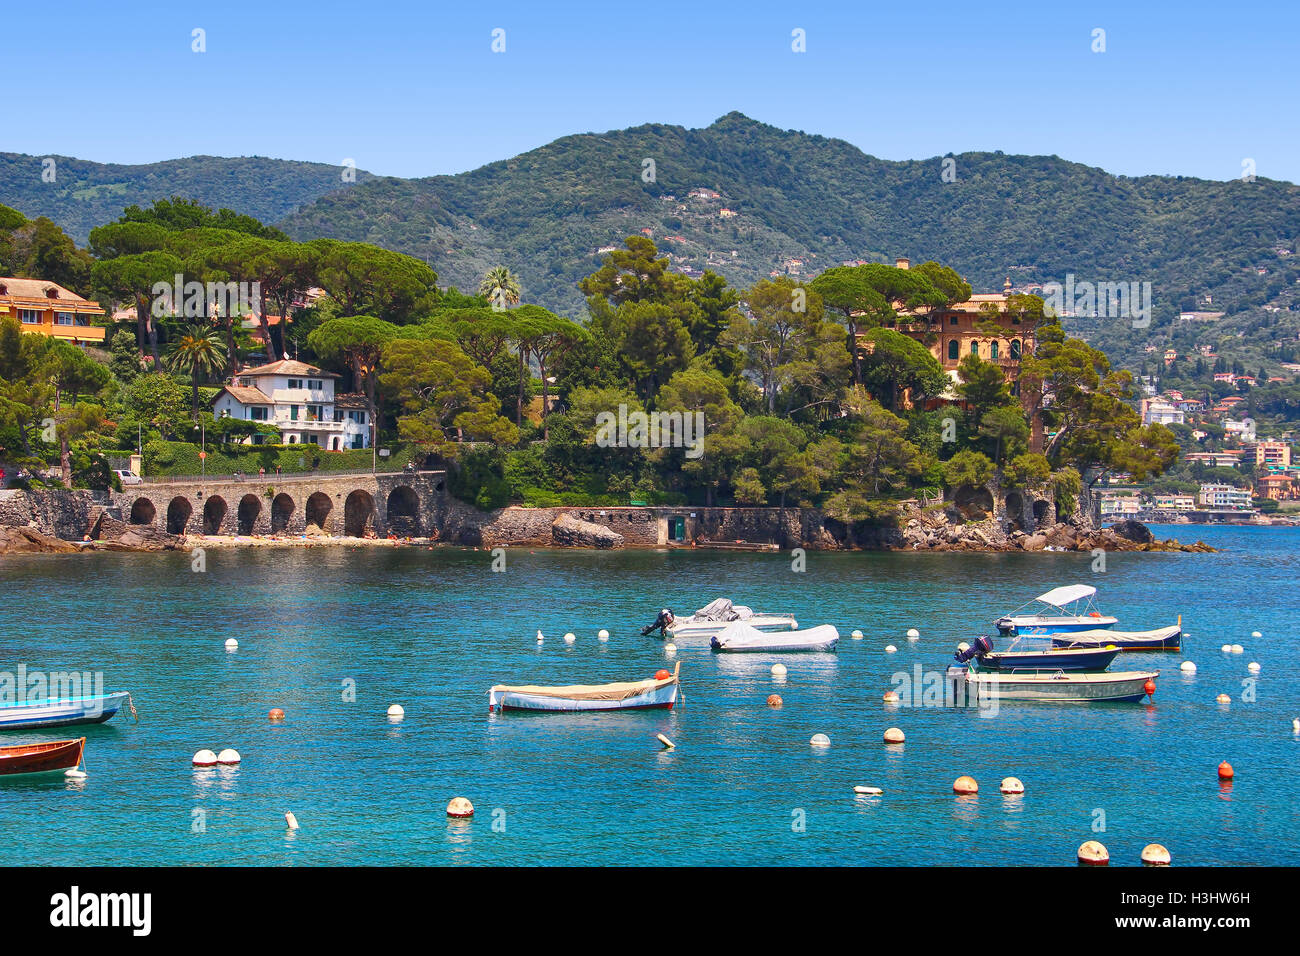 La côte de la mer de Rapallo resort, province de Gênes, ligurie, italie Banque D'Images